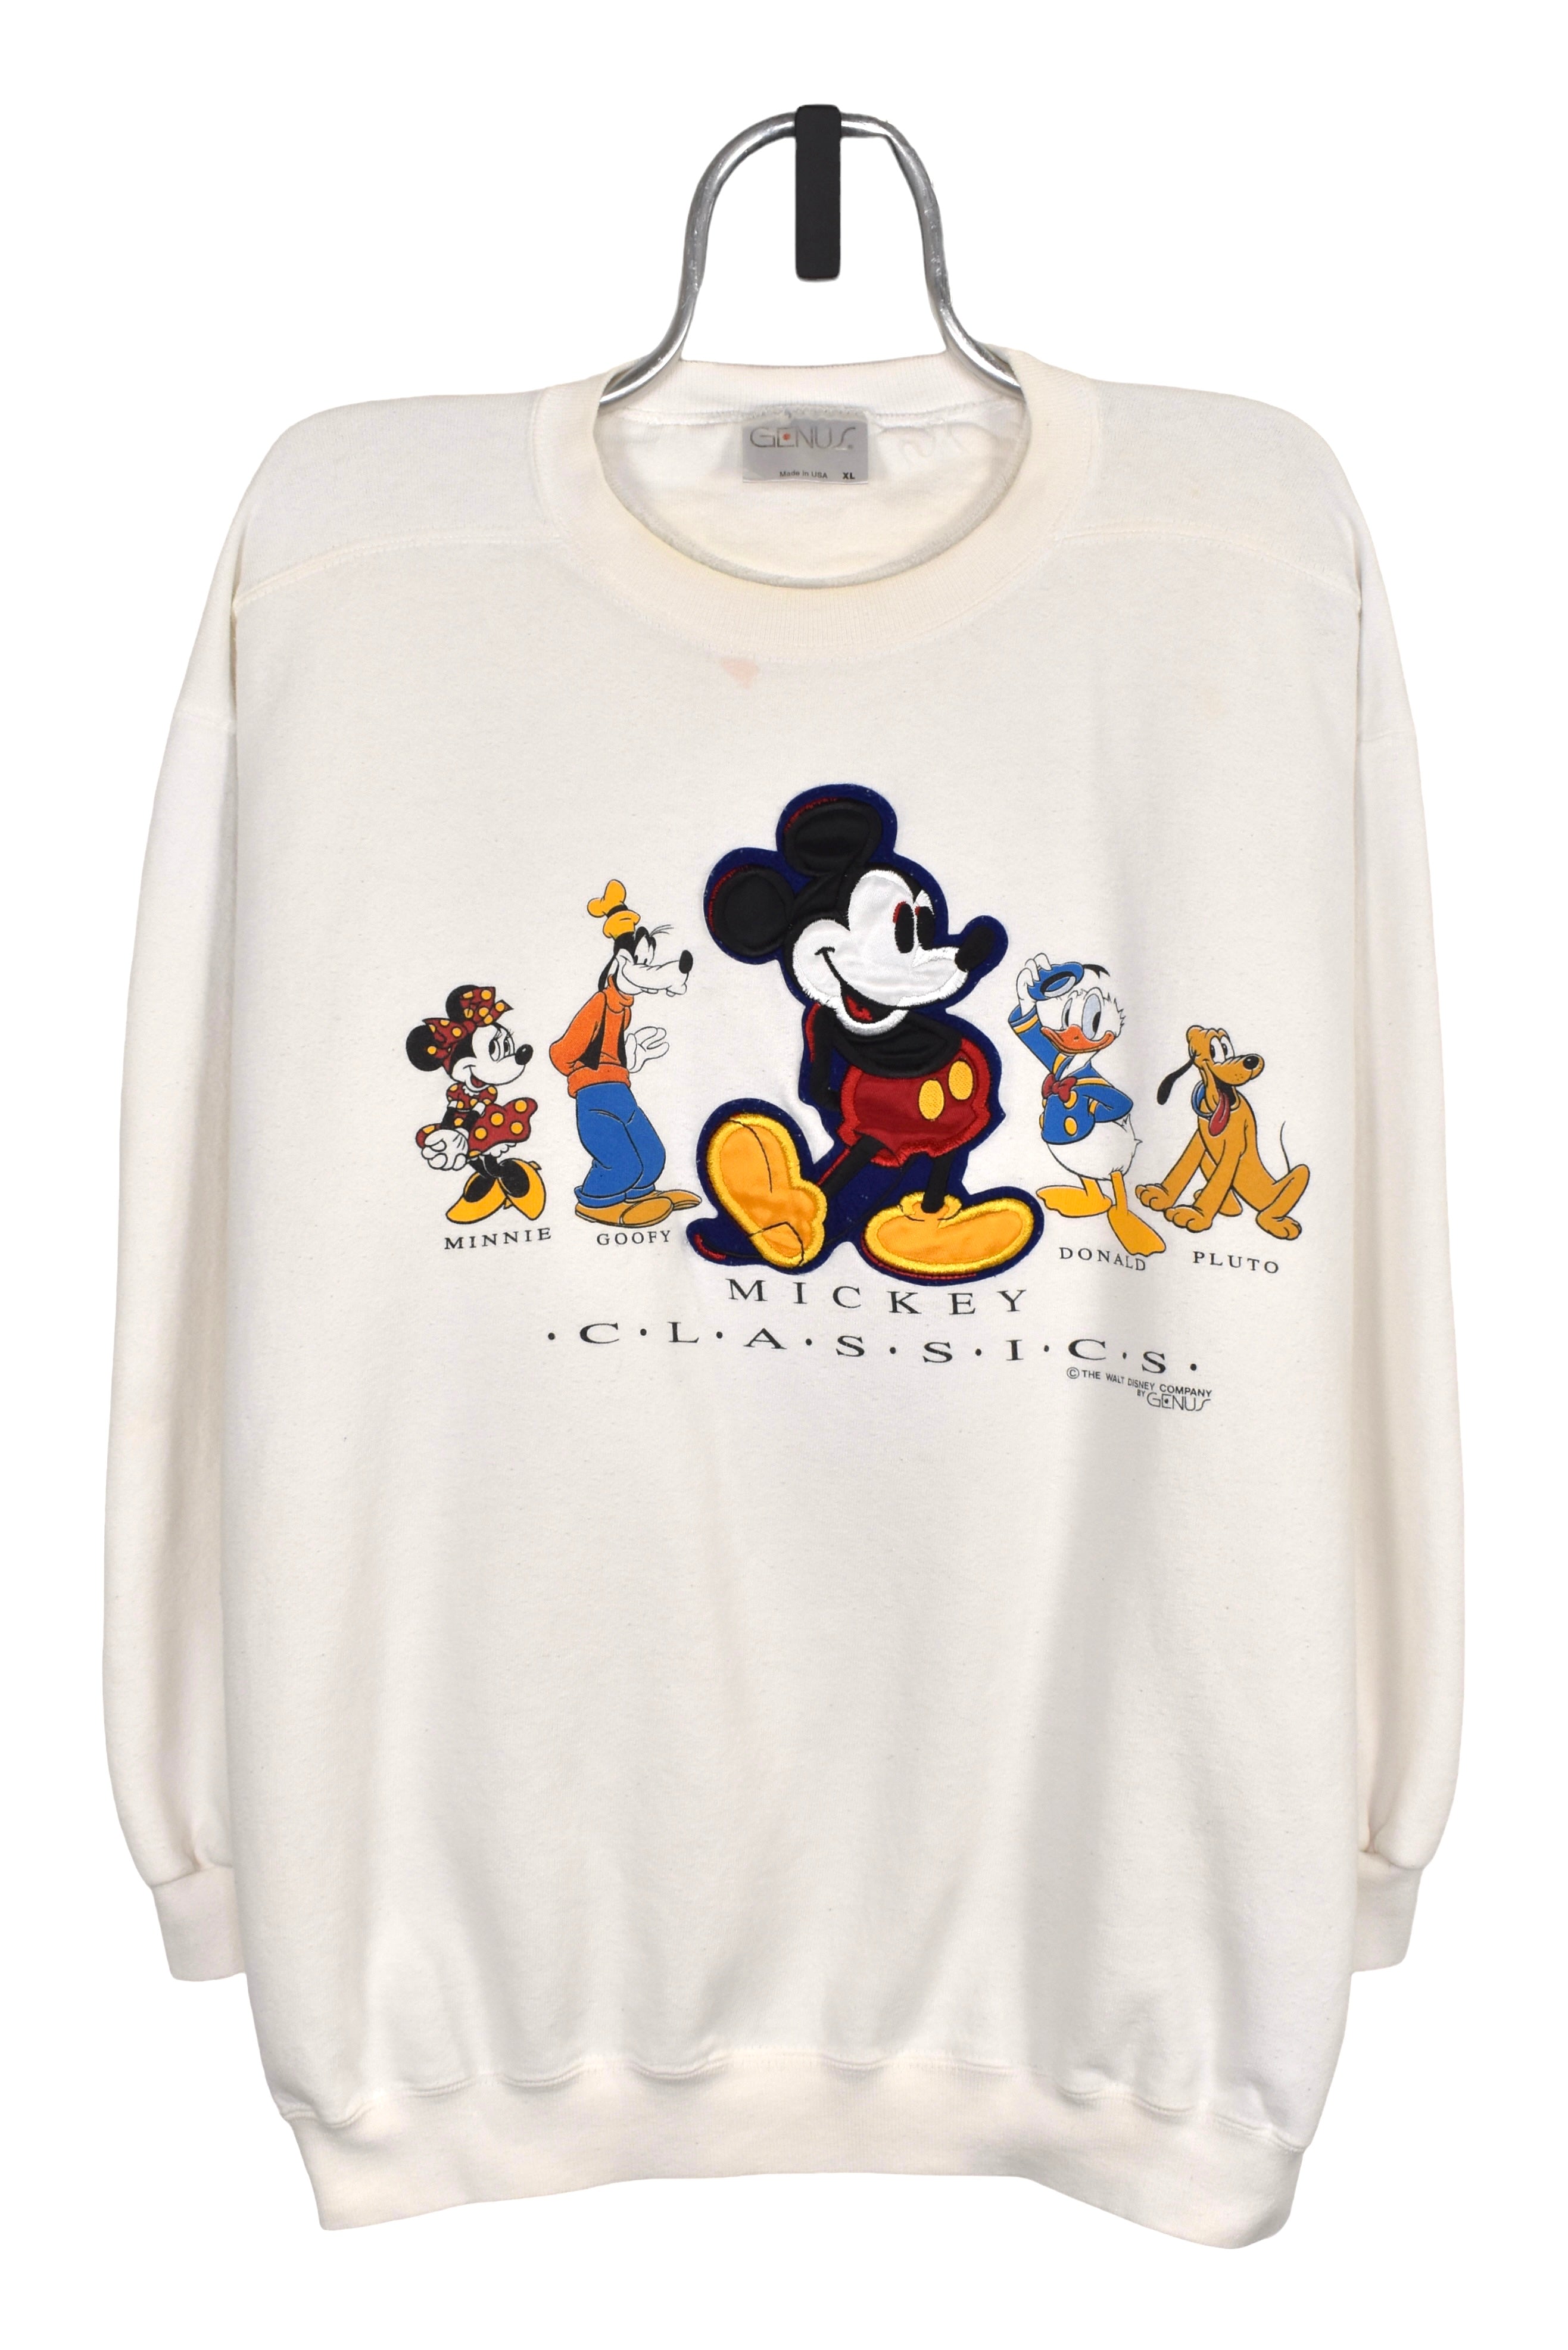 Vintage Mickey & friends sweatshirt (XXL), white Disney graphic crewneck